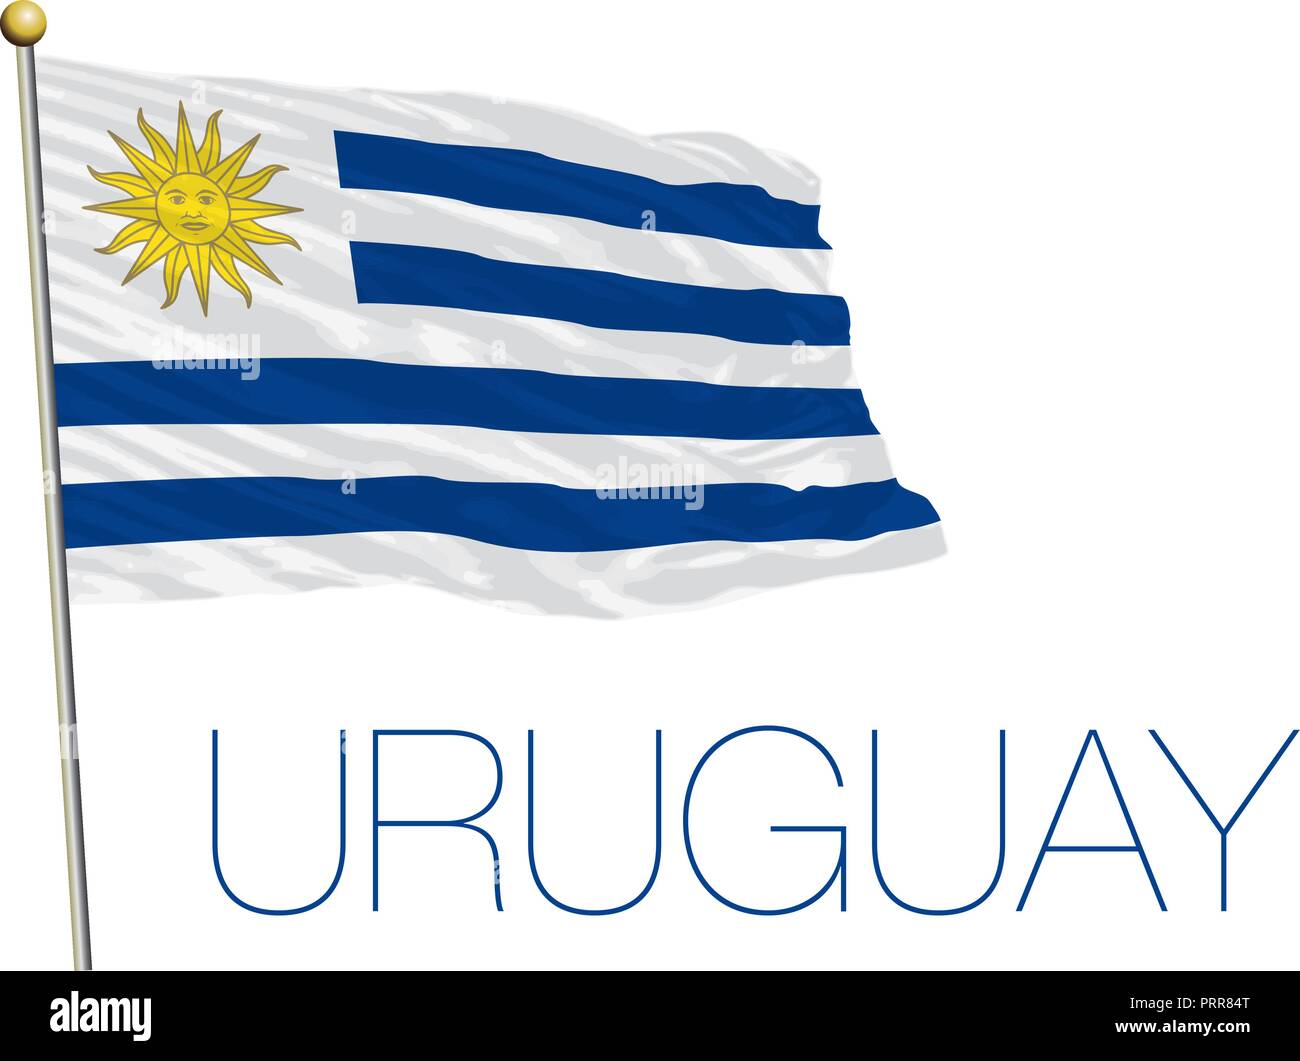 Uruguay official flag, vector illustration Stock Vector